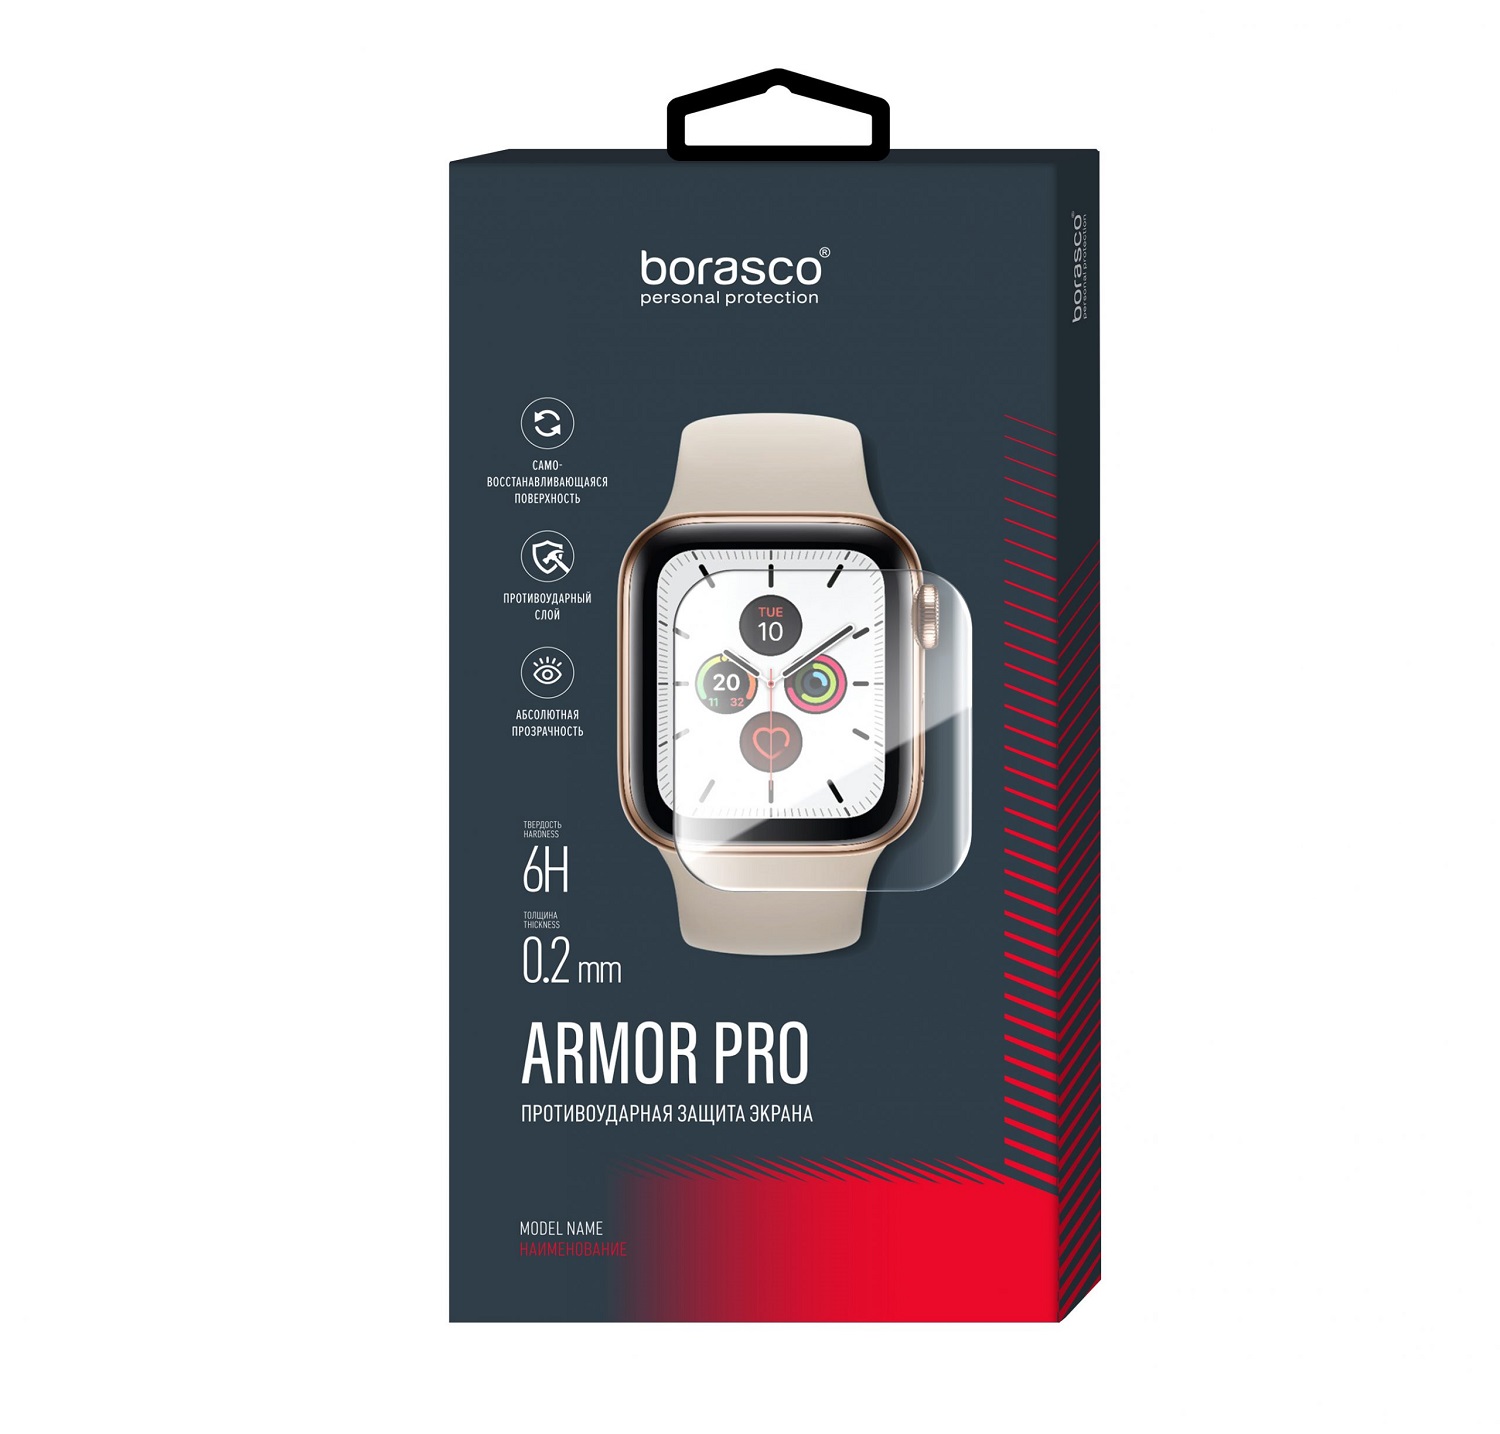 Защита экрана BoraSCO Armor Pro для Xiaomi Mi Watch защита экрана borasco armor pro для philips w200 глянец